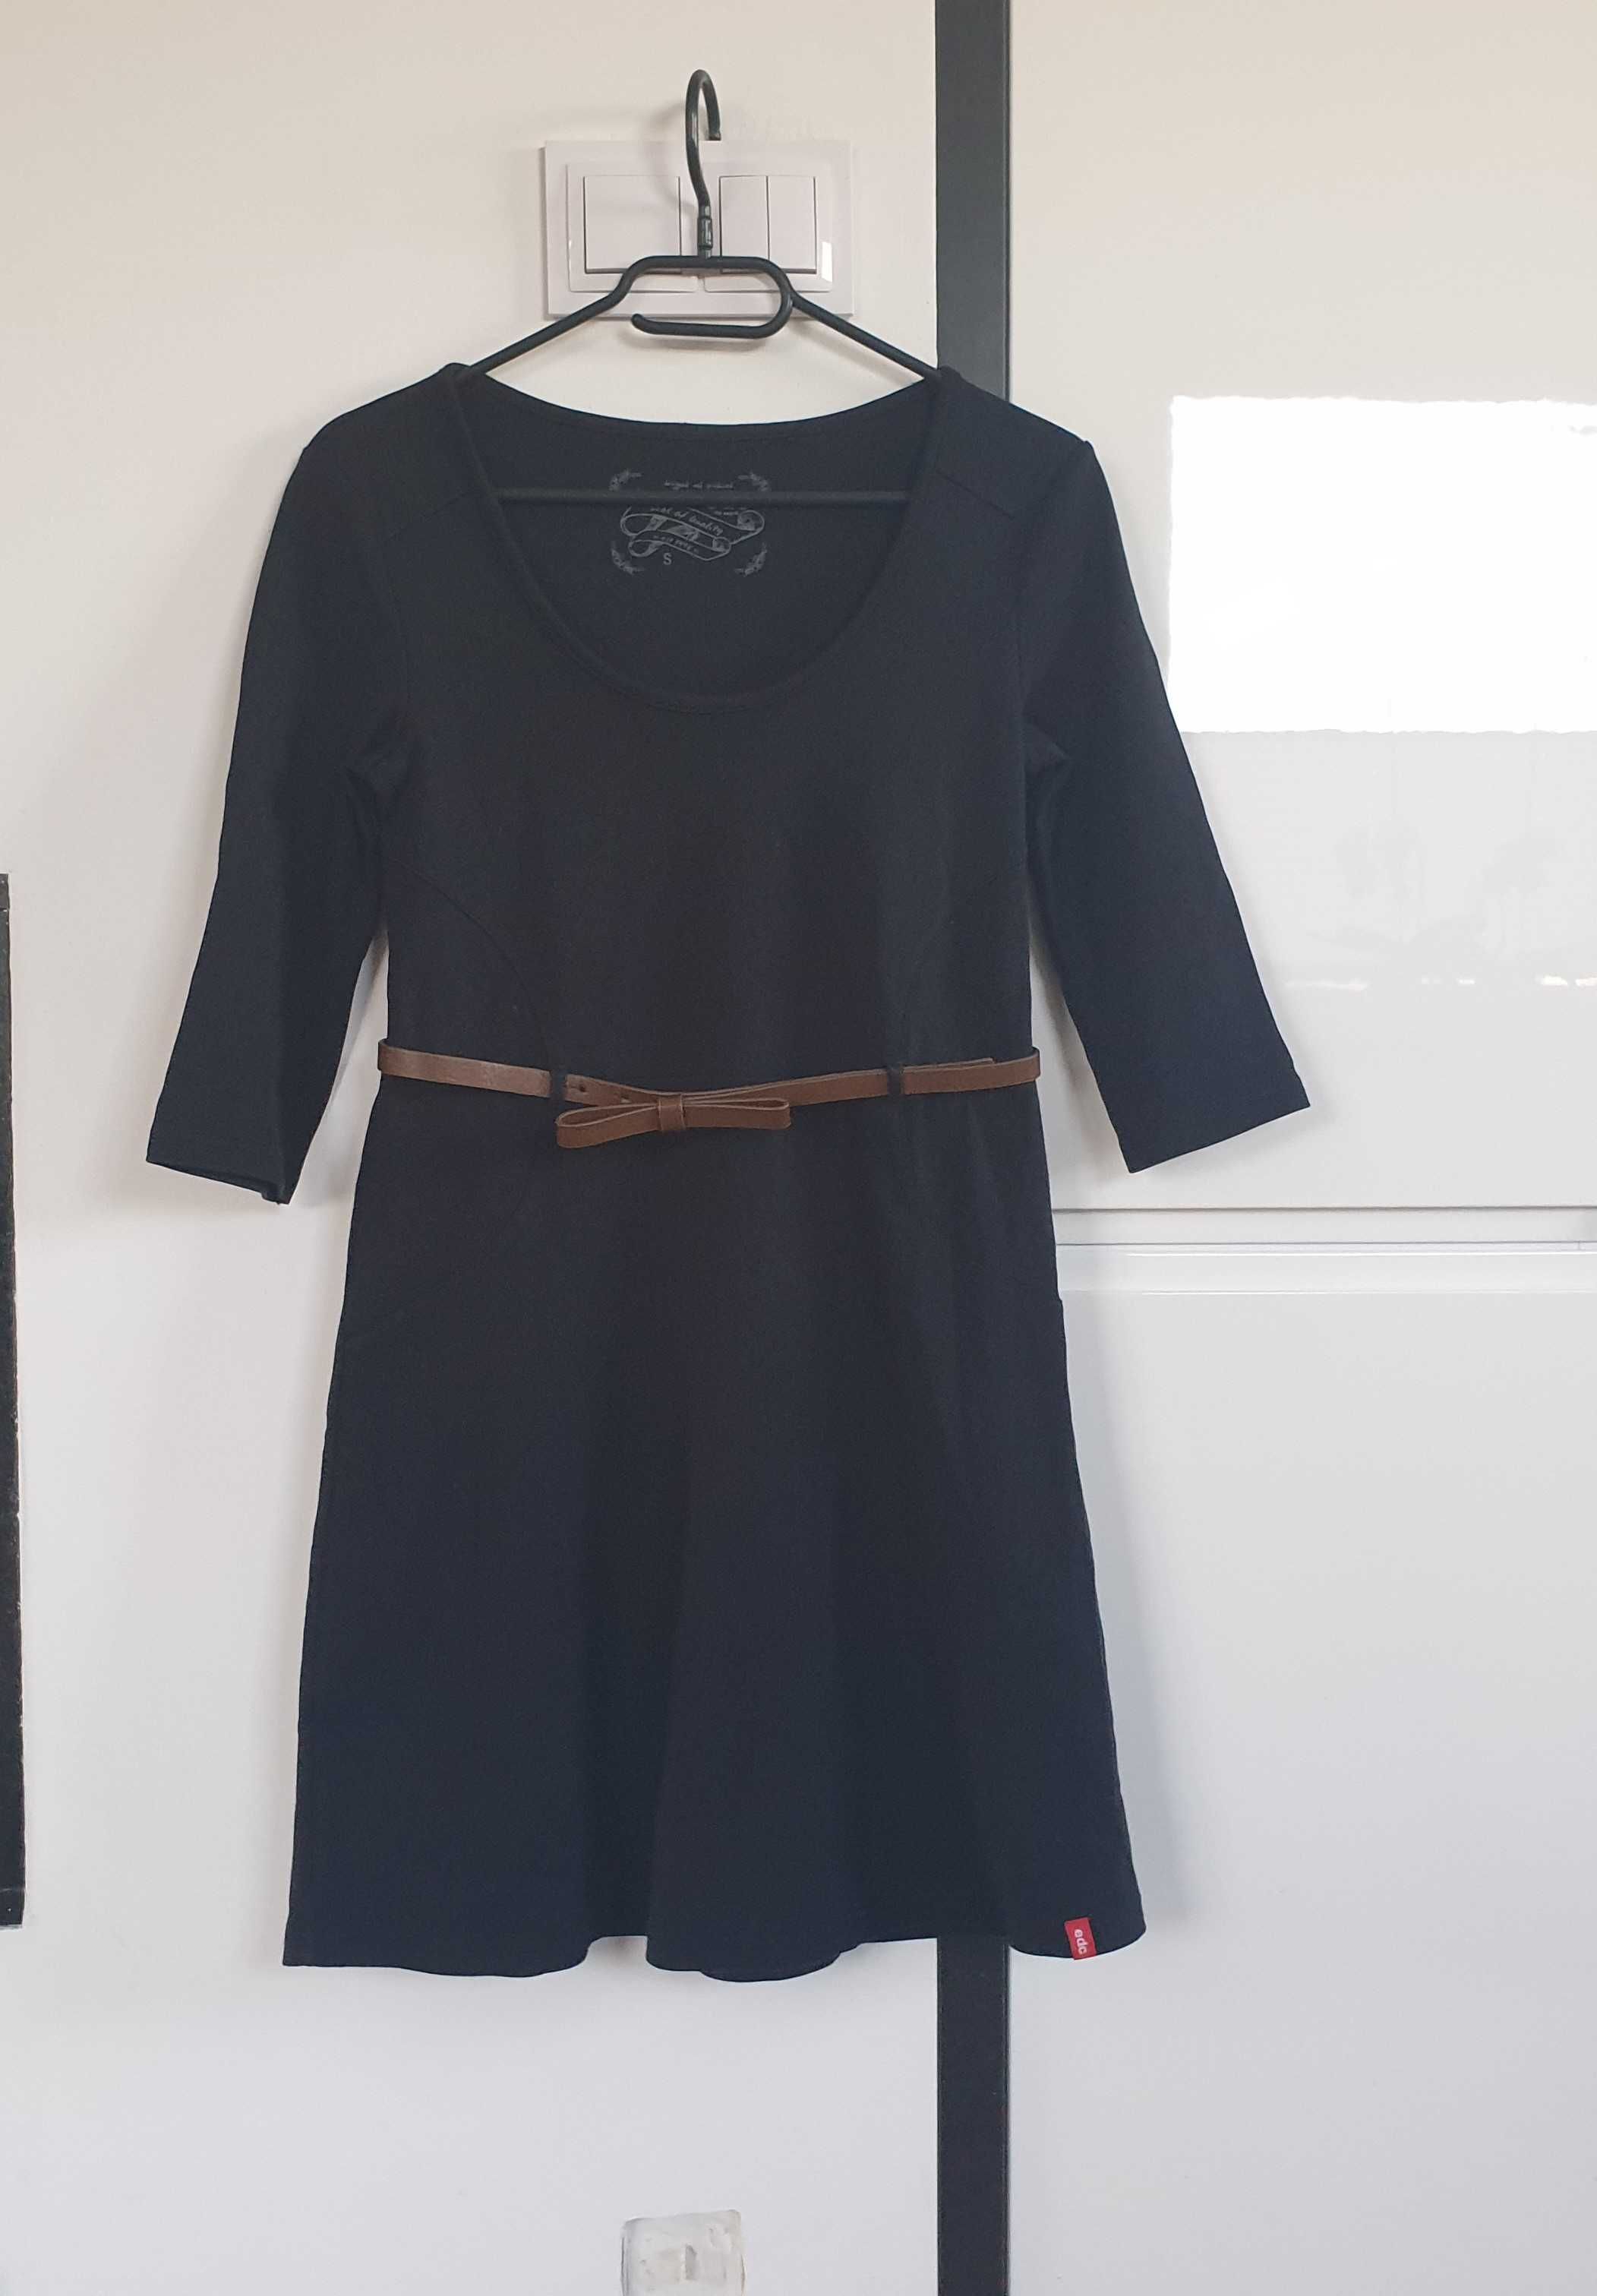 Sukienka czarna z paseczkiem, 100% bawełna, EDC by Esprit, rozmiar S